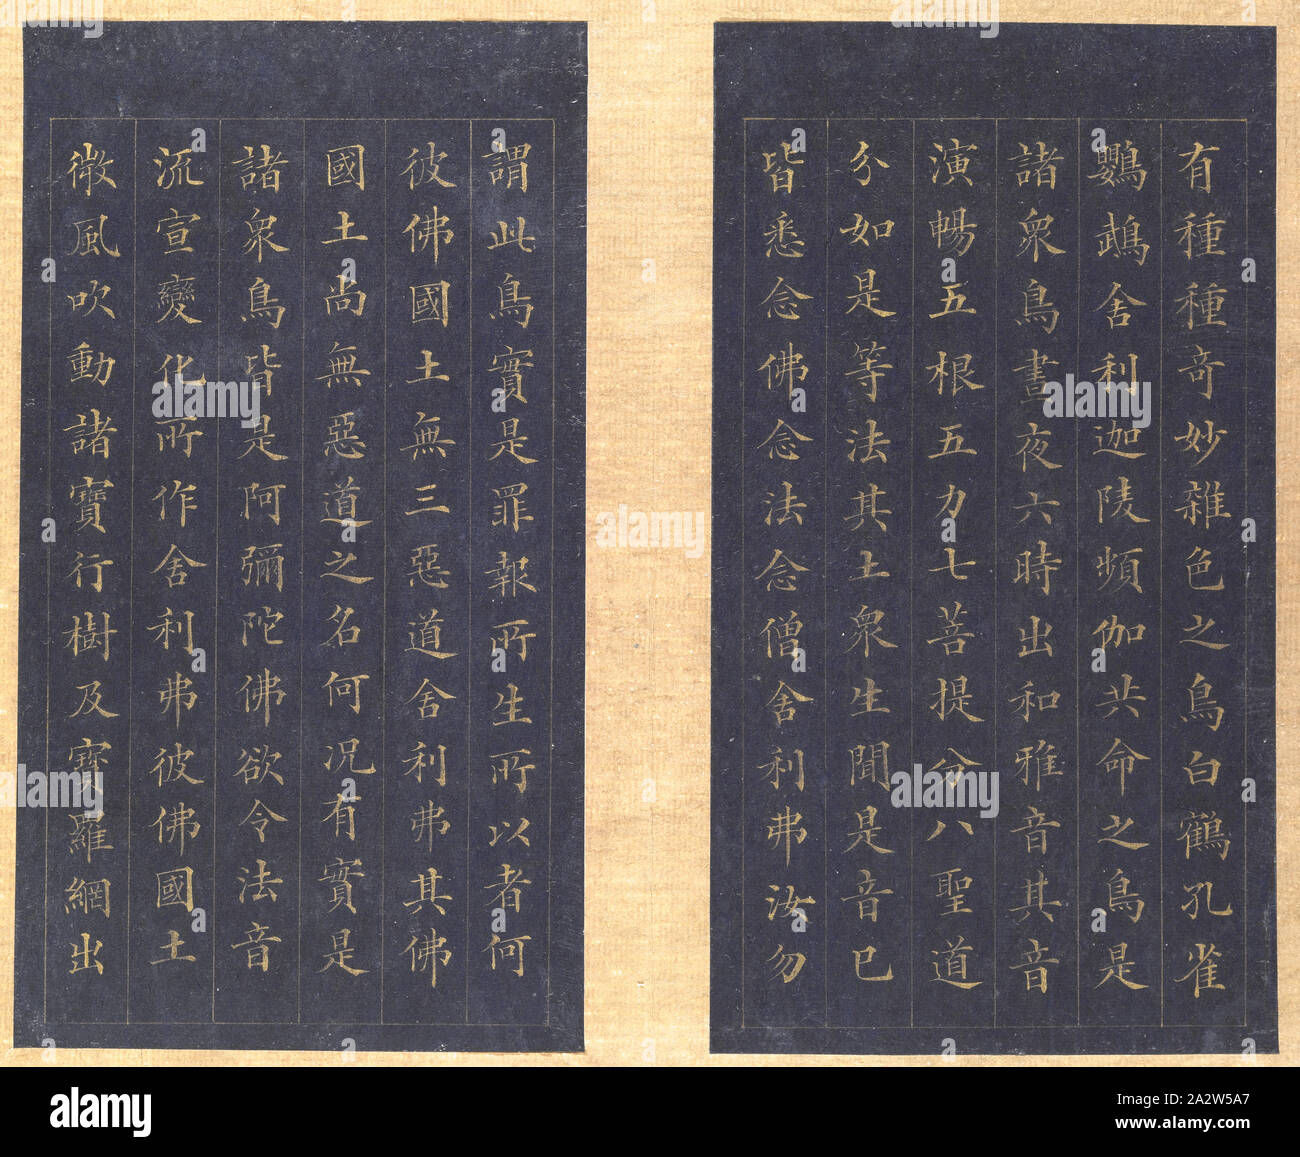 Sutra of Eternal Life (Wu liang shou jing [Sanskrit: Sukhavati-vyuha (Amitayus) Sutra]), Lin Zexu, Calligrapher (Chinese, 1785-1850), Qing dynasty, period, Daoguang, 1837, gold paint on blue paper, 1-1/8 x 7-1/4 x 12-1/8 in., Colophons by Chen Baoshen, Lin Yongyu and Wu Yuan Signed: Seal: [Zixu hanmo] Seal: [Cixhen Minfu], Asian Art Stock Photo